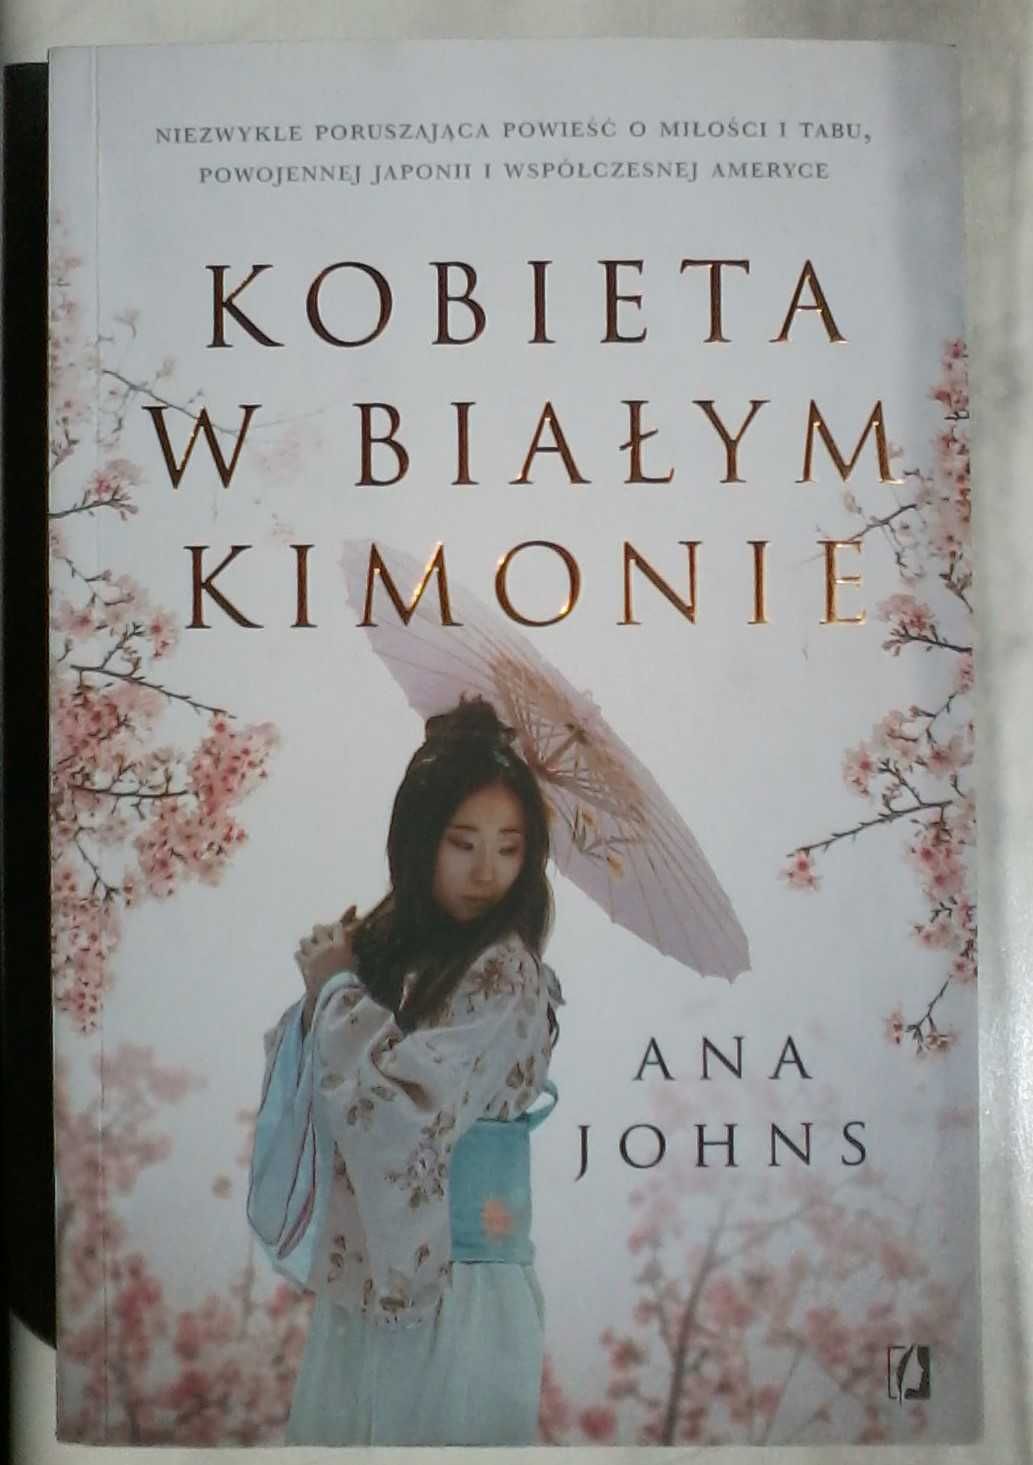 Johns - Kobieta w białym kimonie